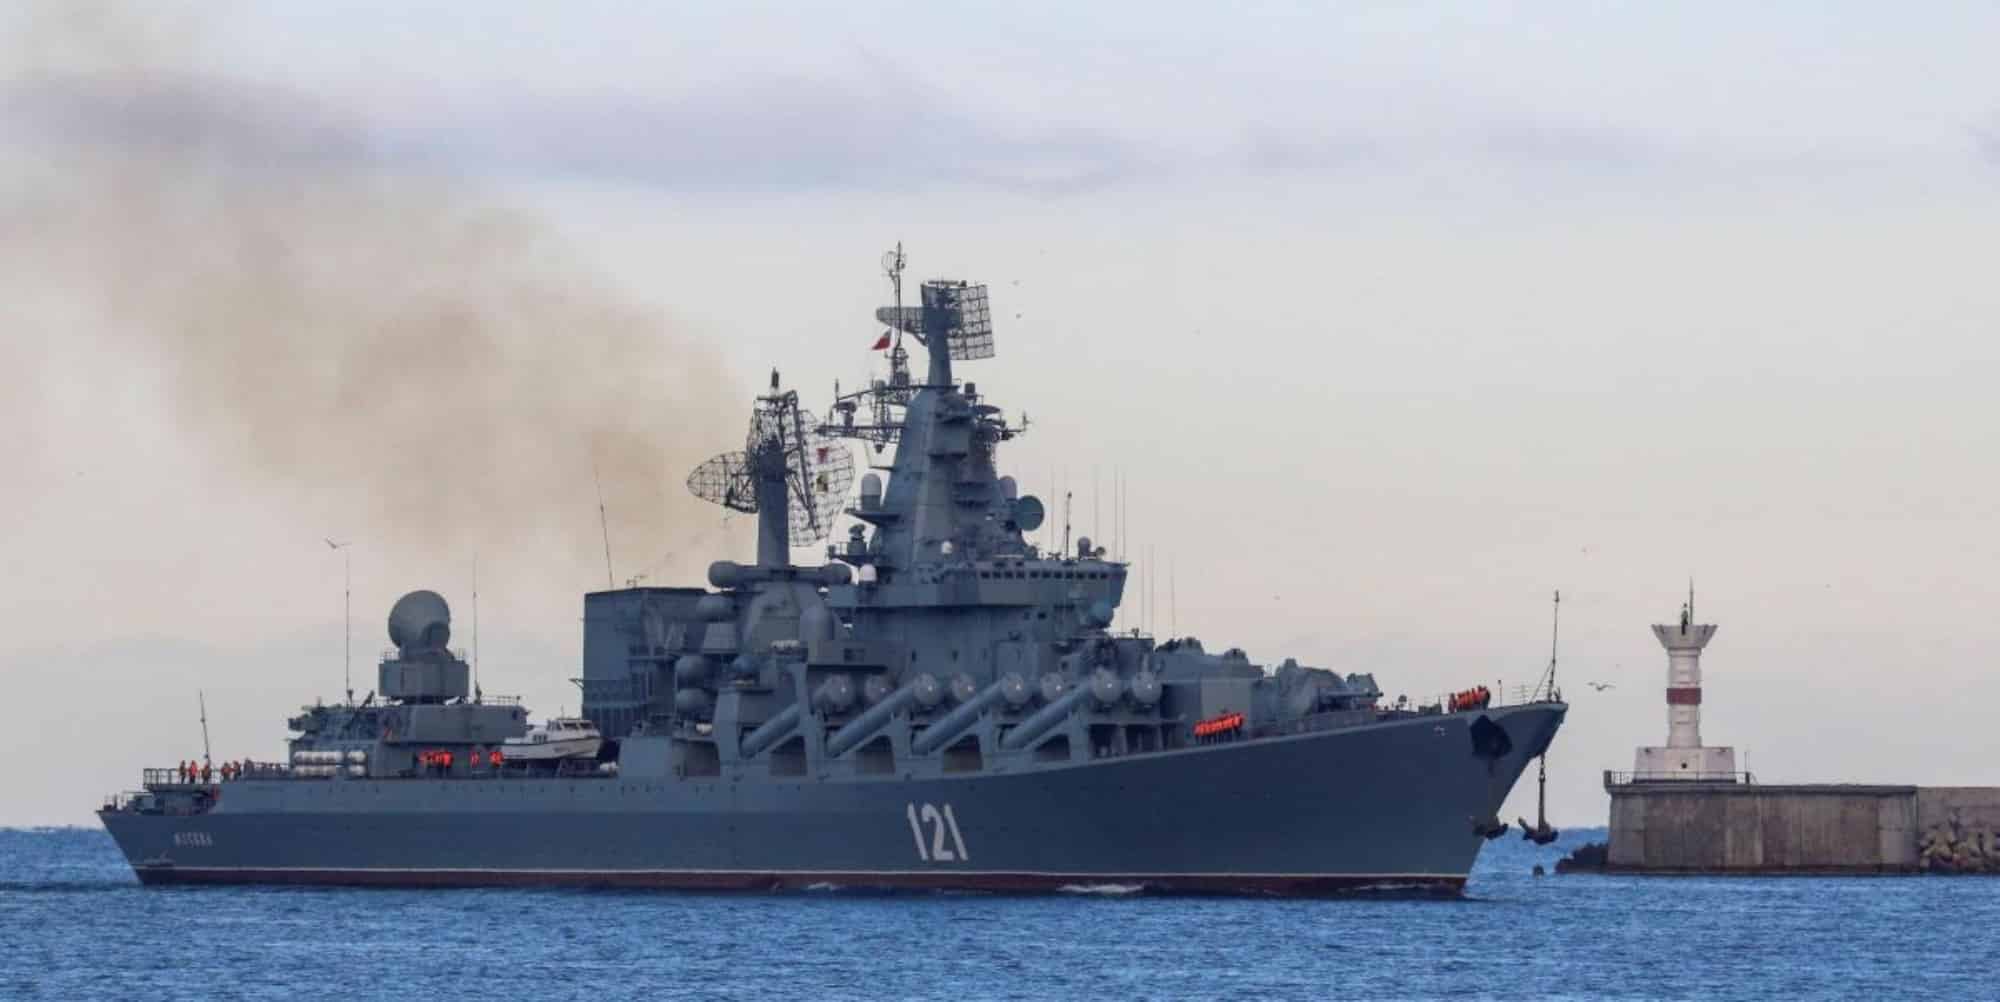 Οι τελευταίοι διάλογοι-σοκ πριν τη βύθιση του Moskva: «Το πλοίο γέρνει, δεν μπορούμε να κινηθούμε» (βίντεο)